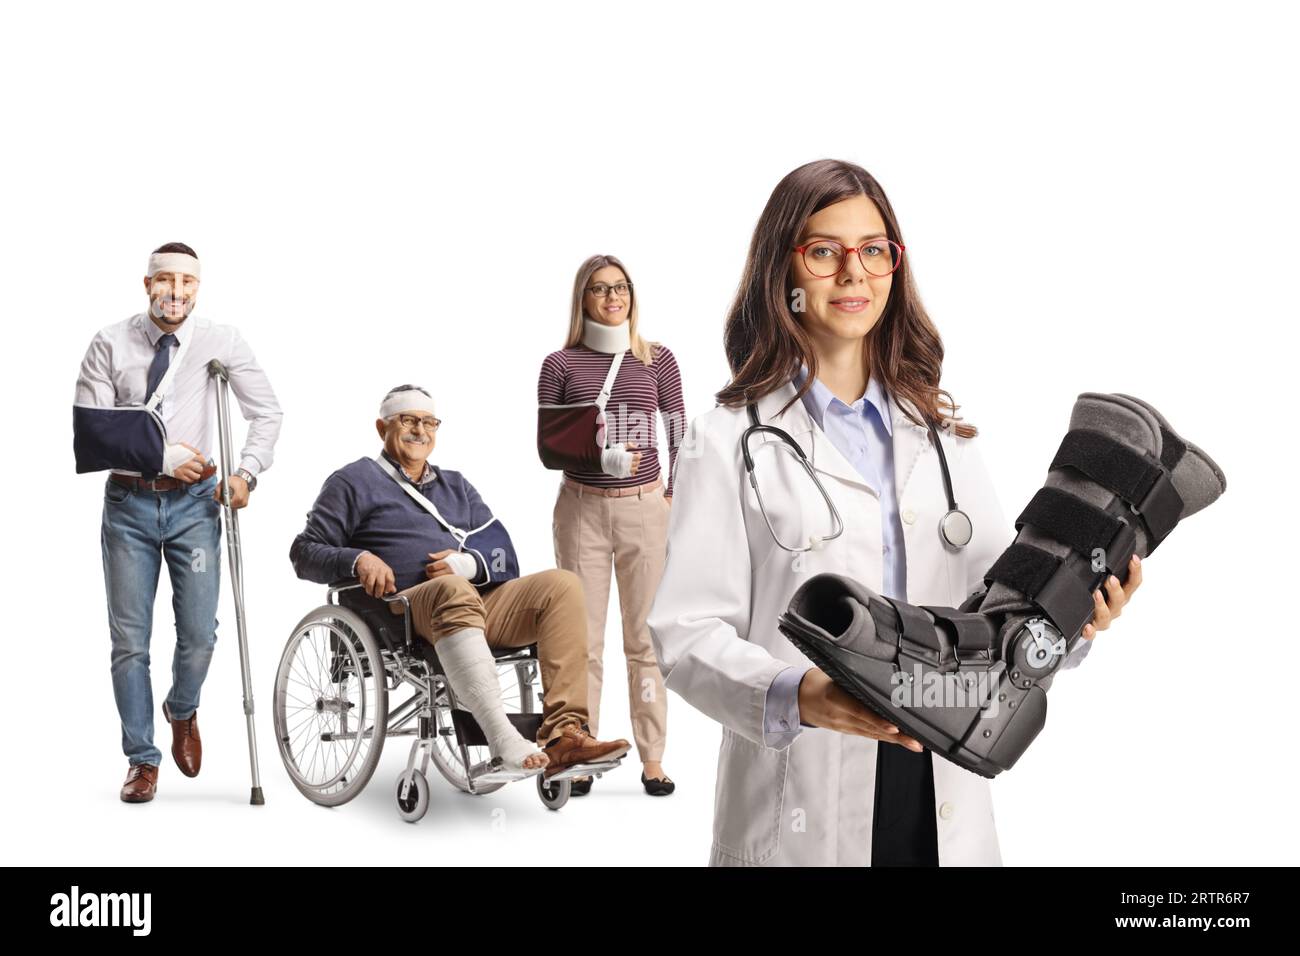 Médico de sexo femenino joven que sostiene un soporte para el pie y el grupo de personas heridas que se colocan detrás aislado en el fondo blanco Foto de stock